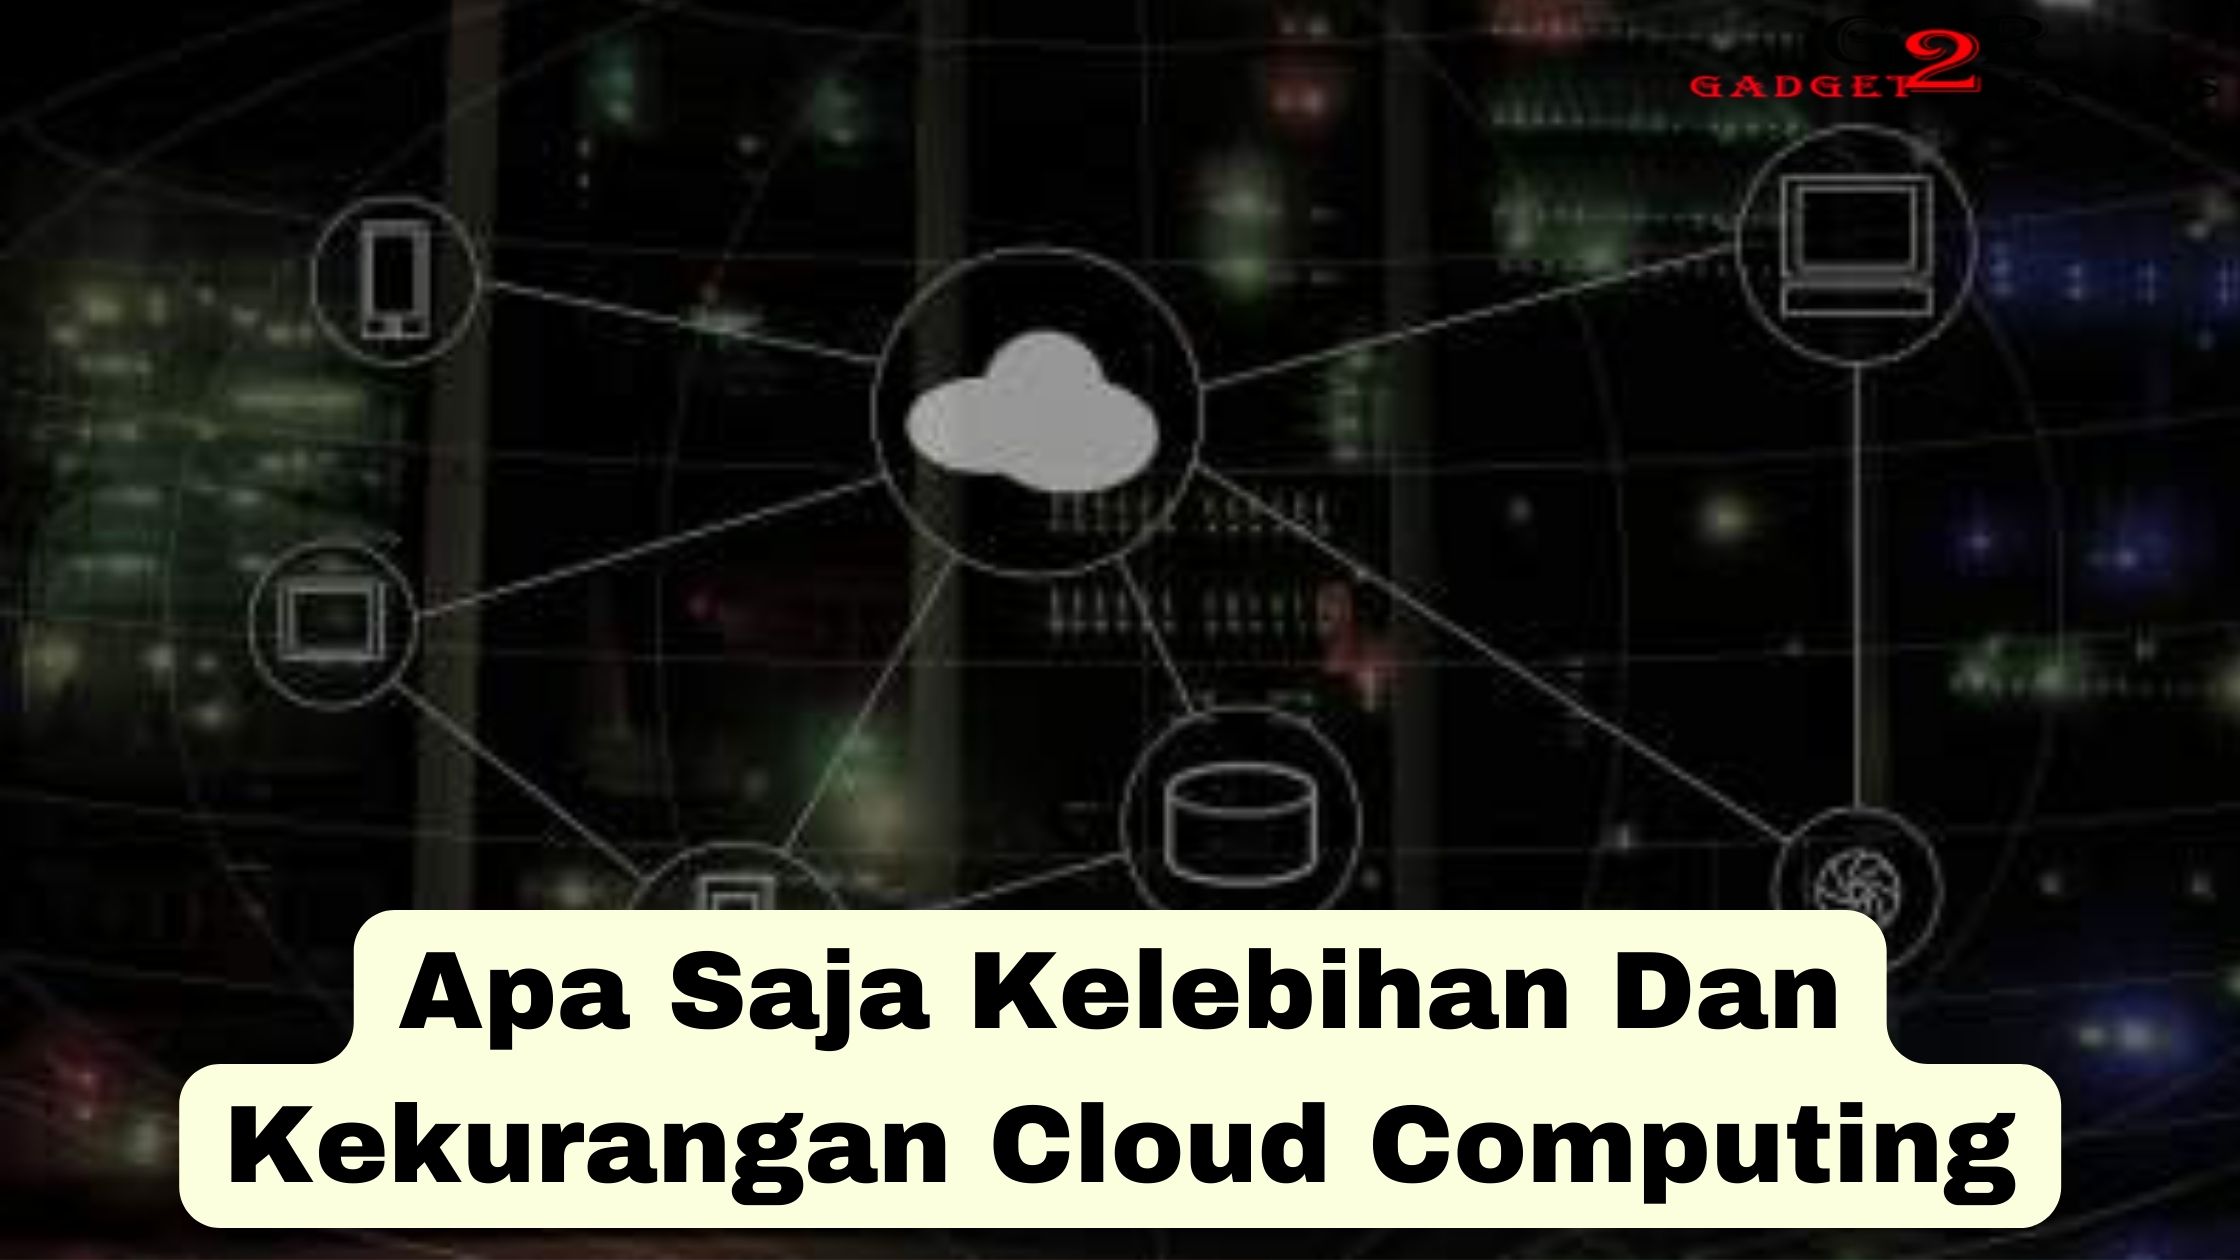 Kelebihan Dan Kekurangan Cloud Computing